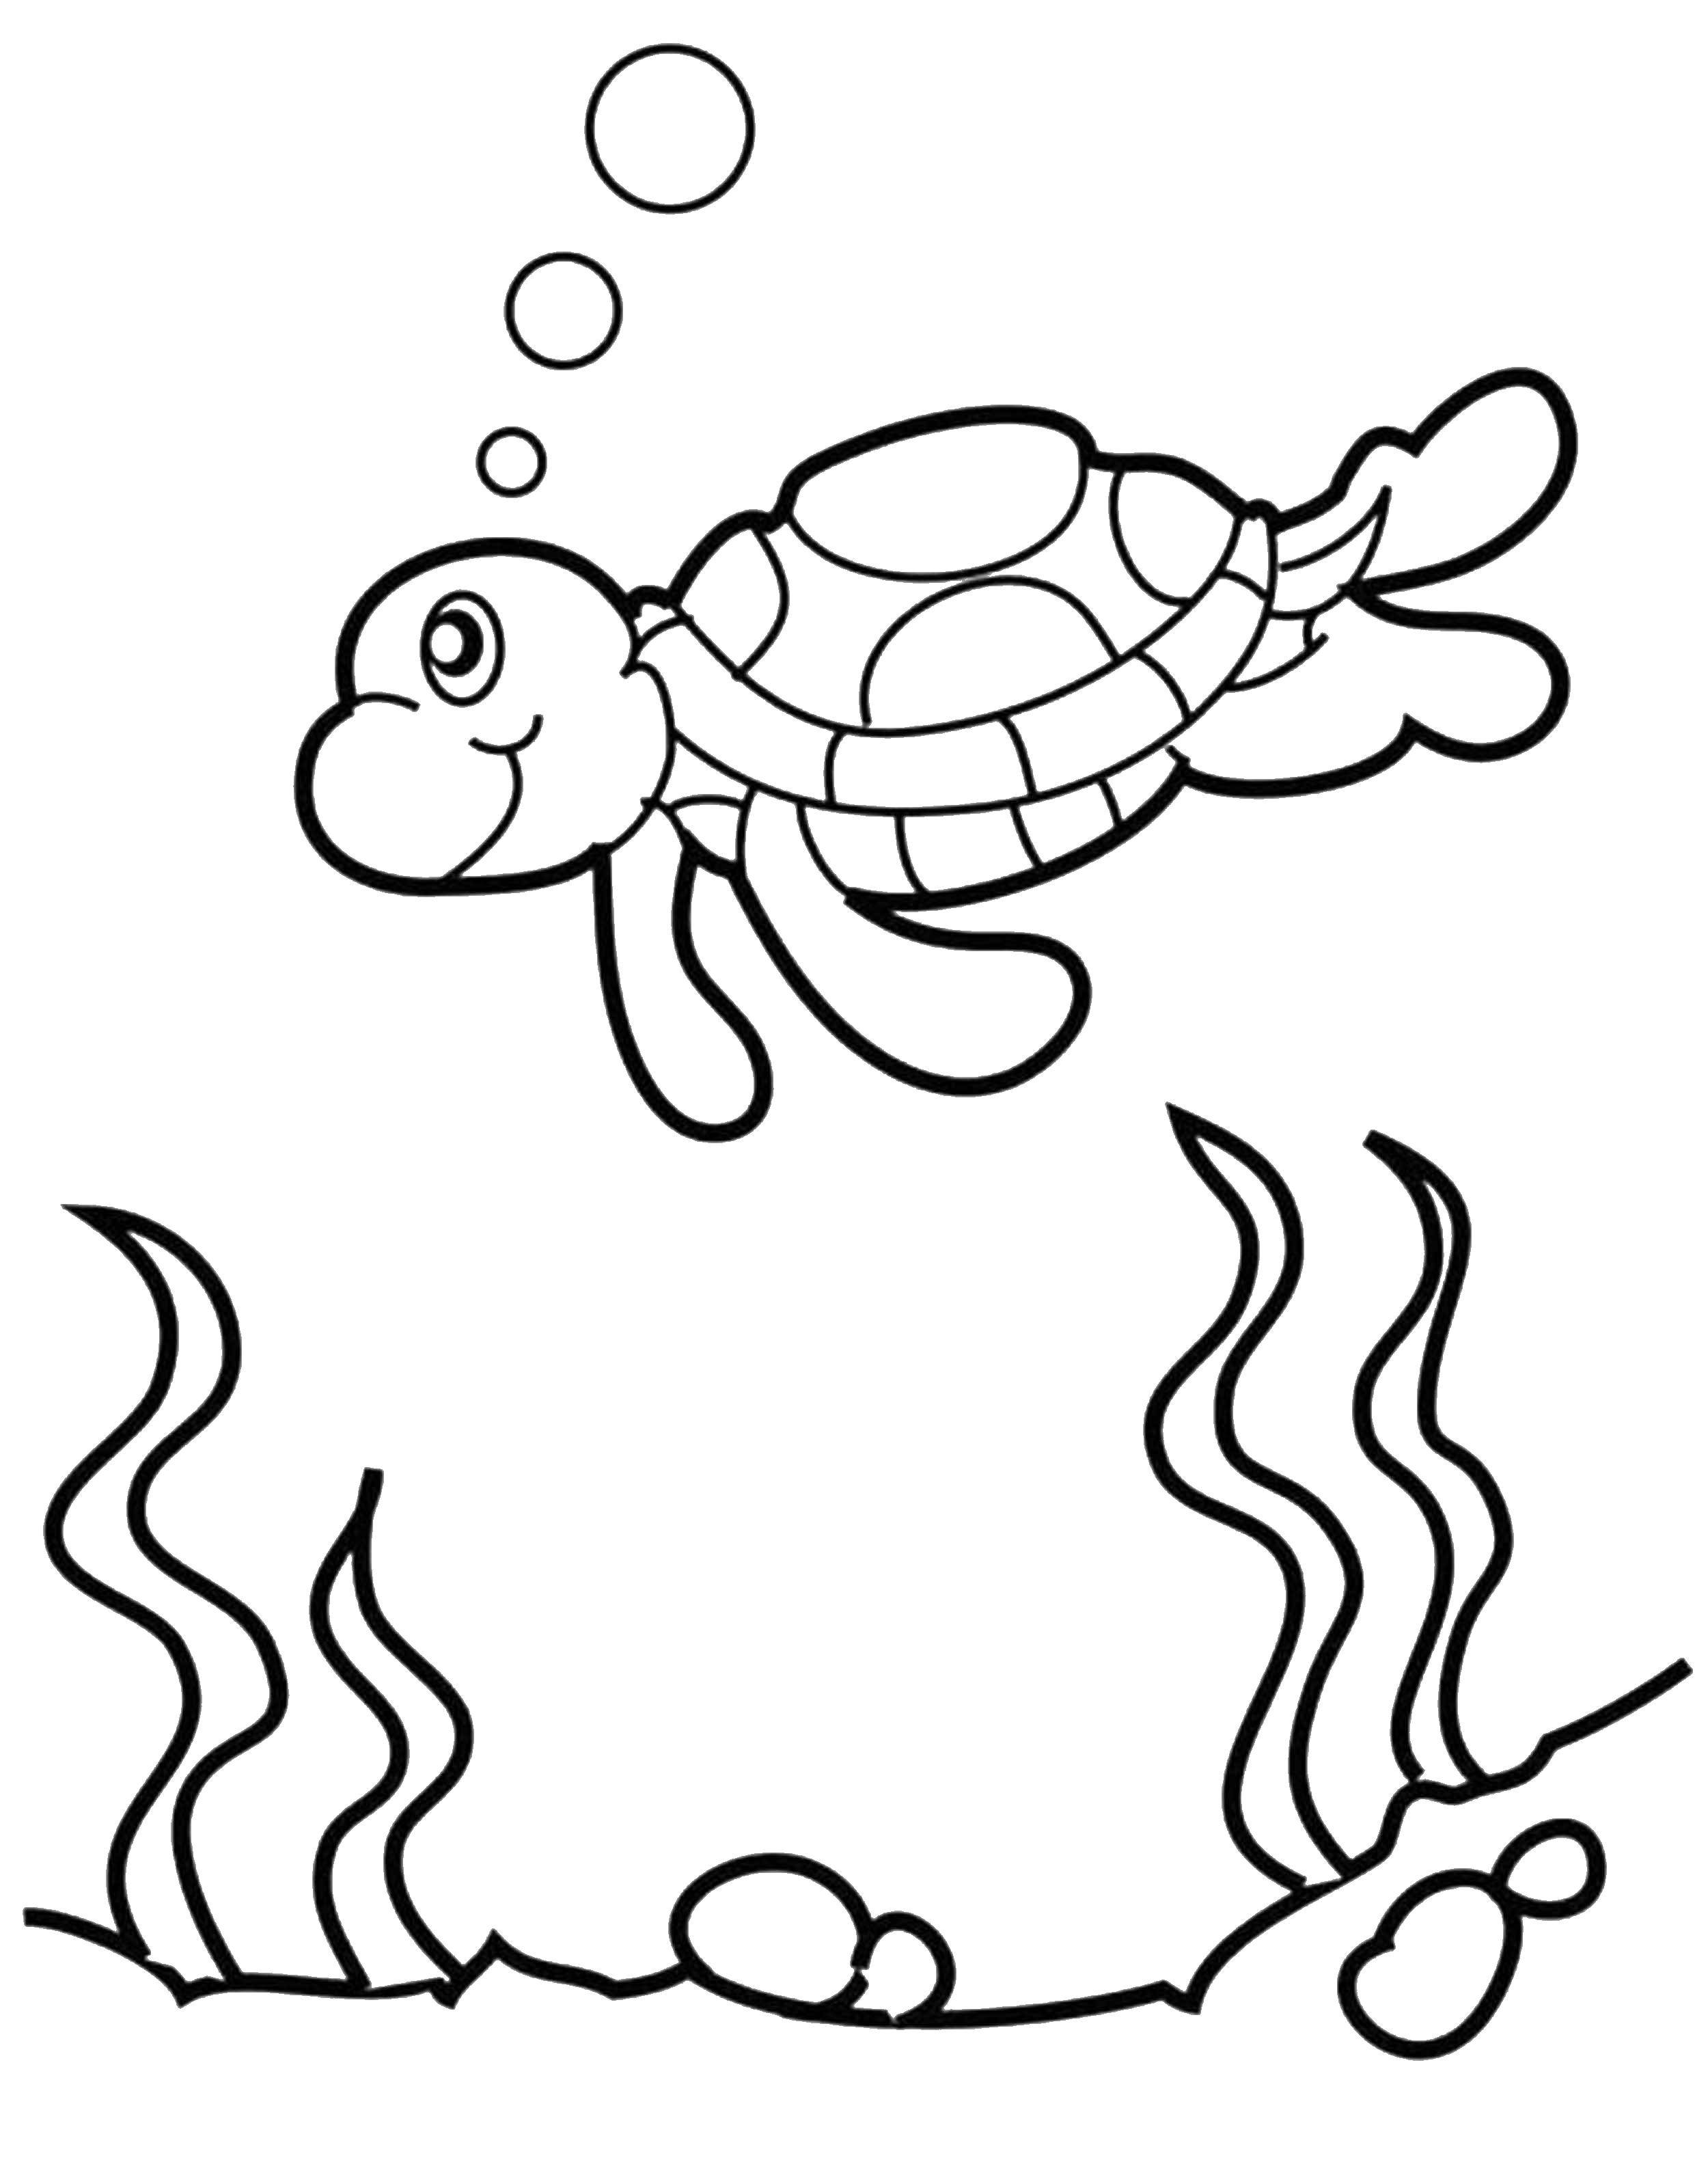 Название: Раскраска Пузырьки от черепашки. Категория: Черепаха. Теги: Рептилия, черепаха.